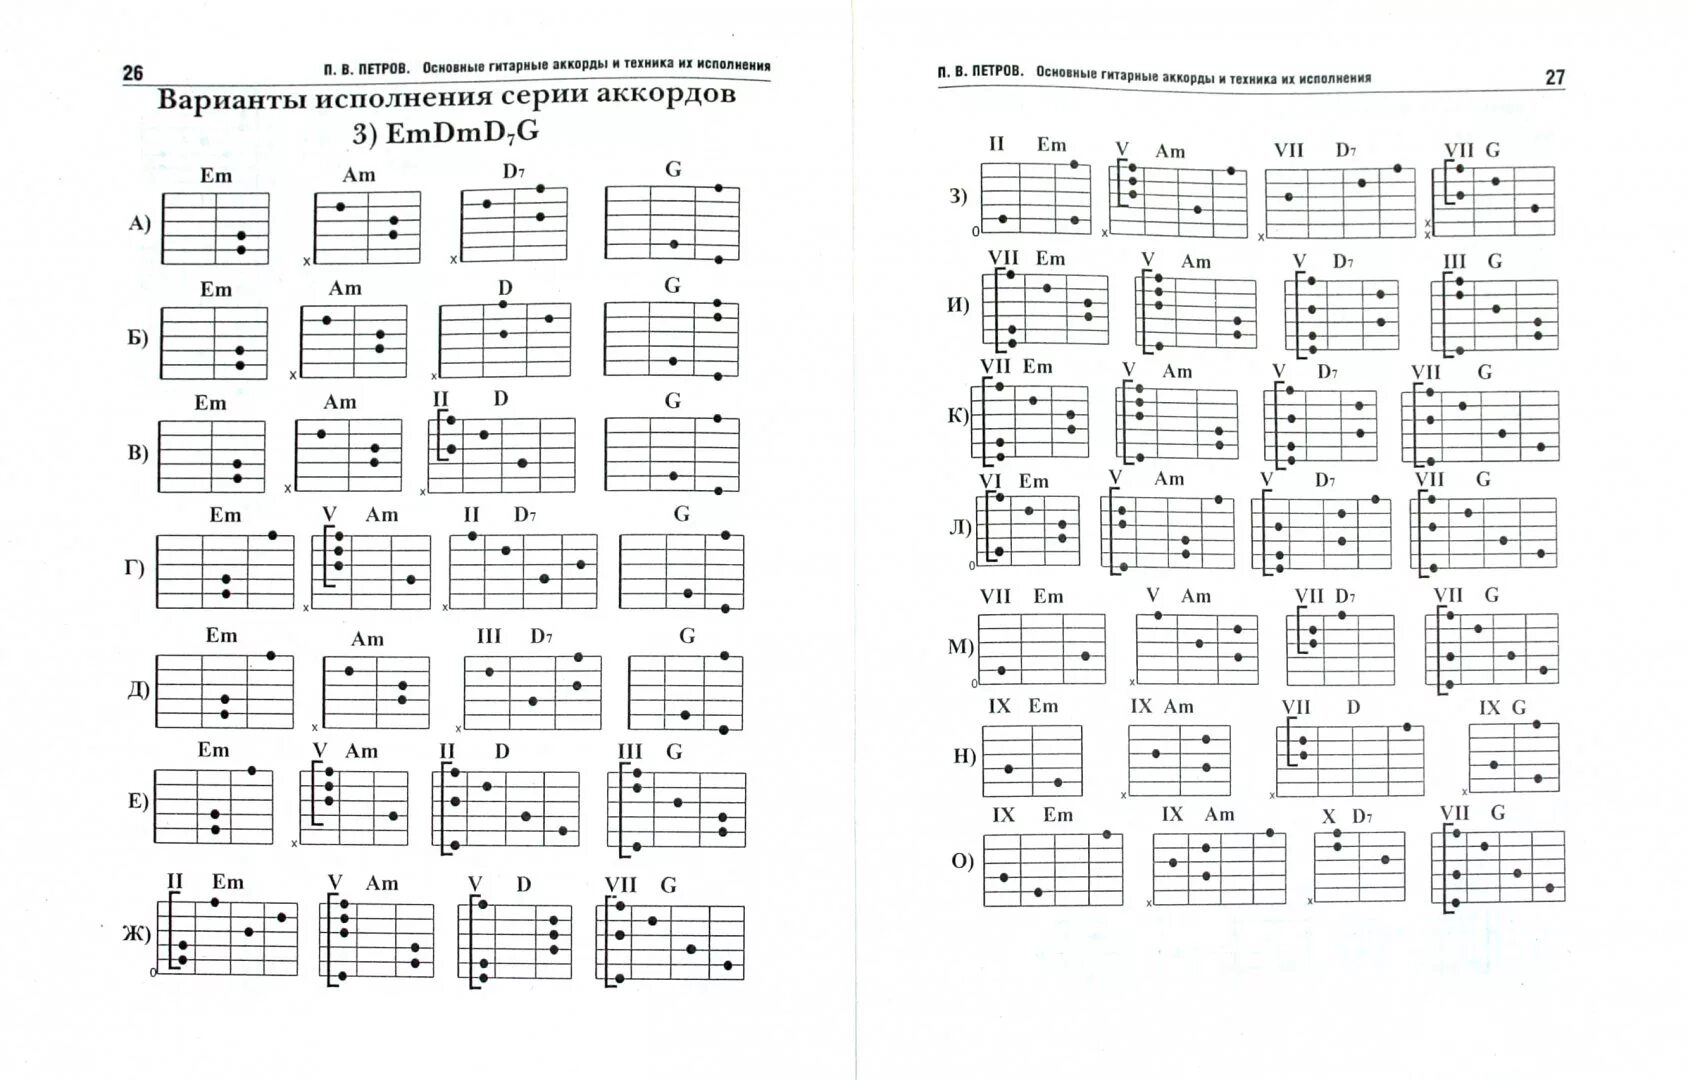 Песни на гитаре аккорды шестерка. Таблица аккордов для гитары 6 струн для начинающих. Гитарные аккорды таблица для начинающих. Аккорды на 6 струнной гитаре. Таблица простых аккордов для гитары 6 струн.